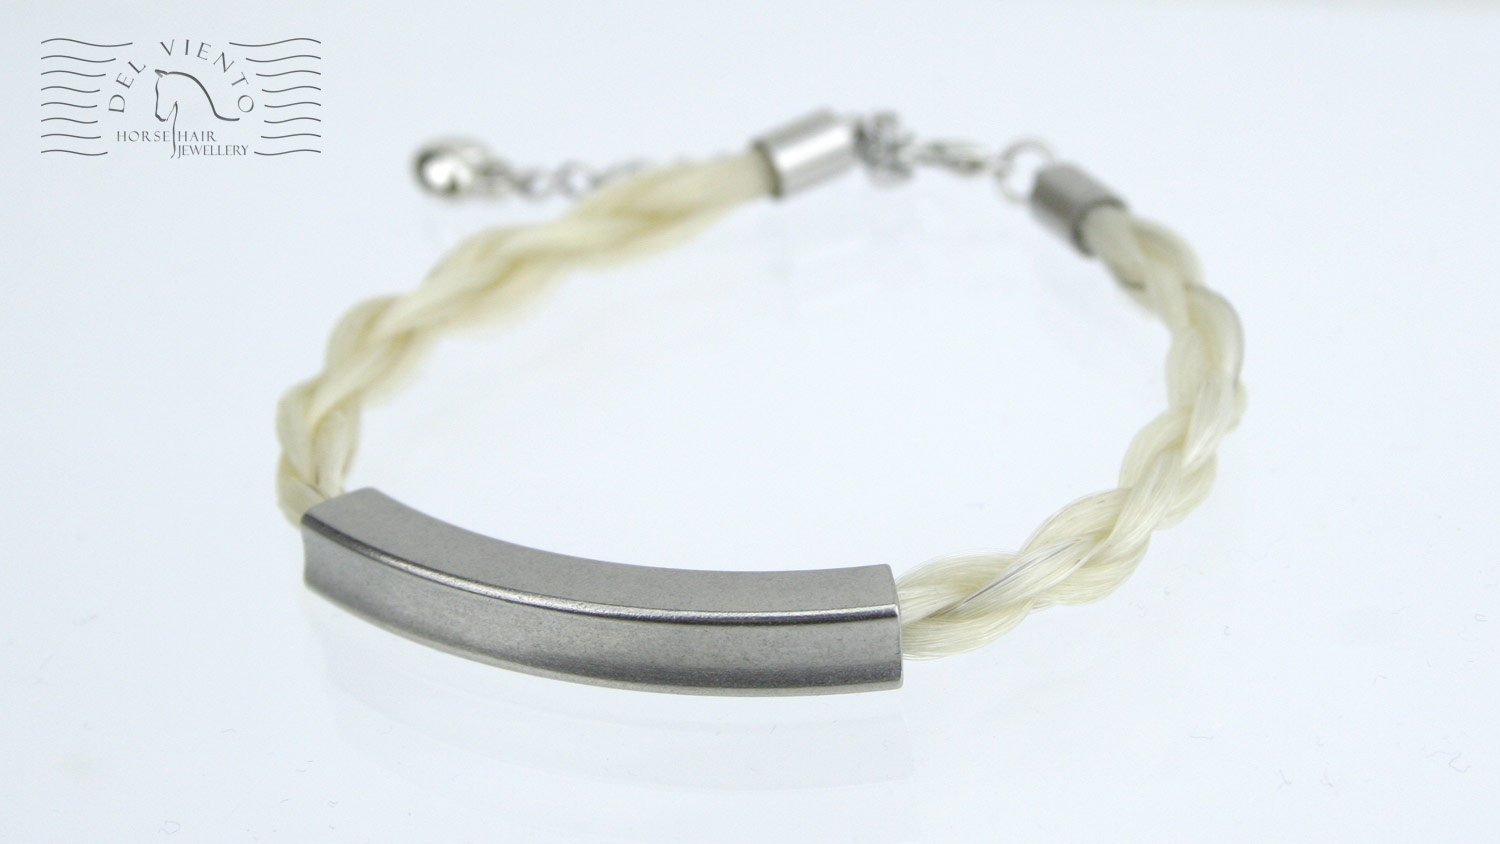 HHJ01ST - stainless steel square curved tube horseshair braided bracelet